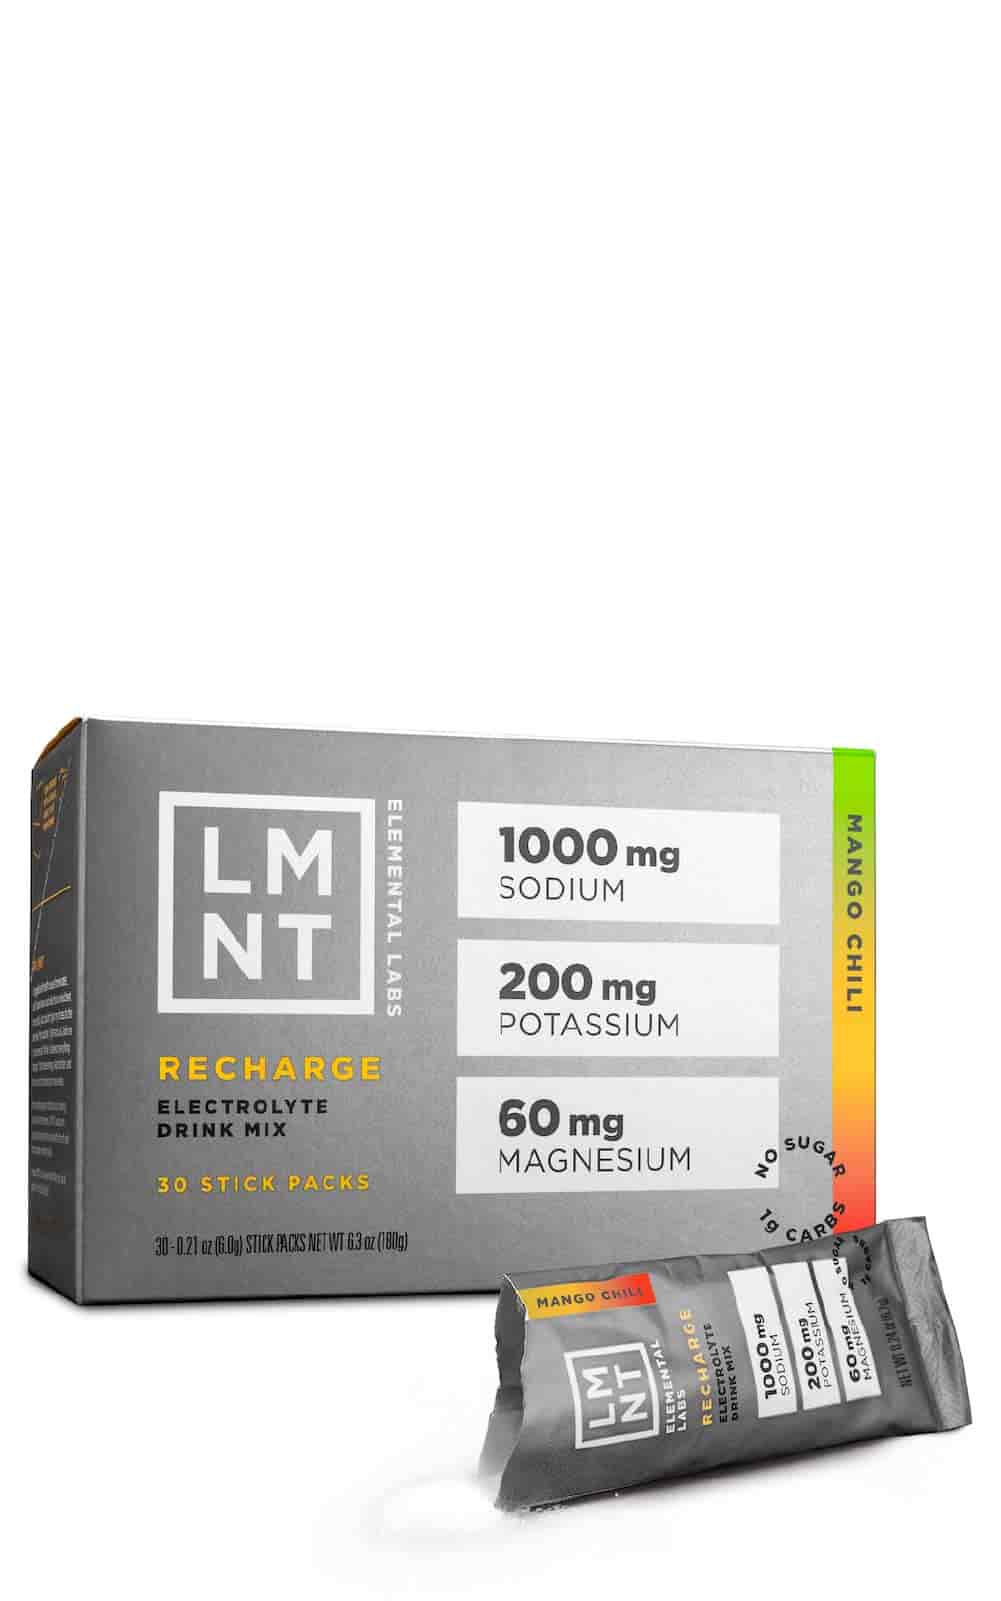 LMNT Recharge Electrolyte Drink Mix Mango Chili bei LiveHelfi kaufen